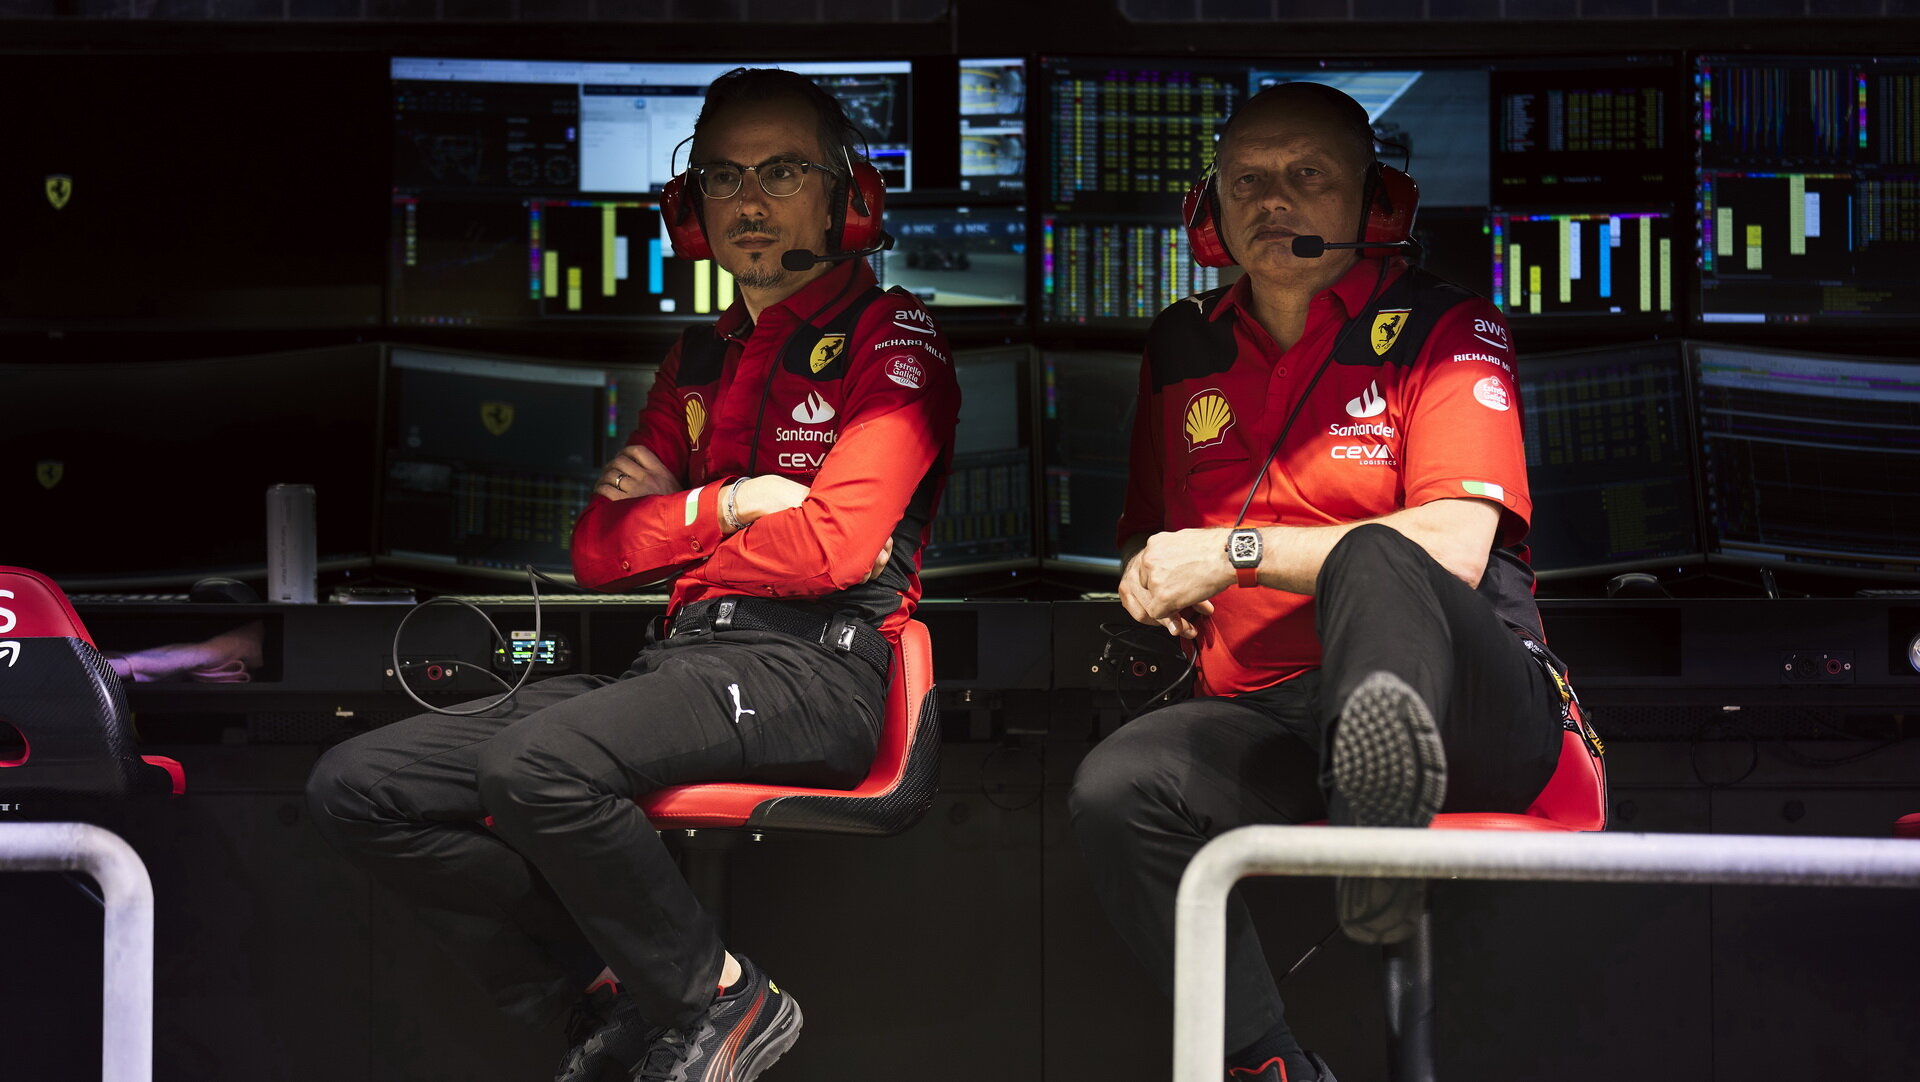 Šéf Ferrari Vasseur (na snímku s Laurentem Mekiesem) vysvětluje kroky svého týmu po GP Austrálie